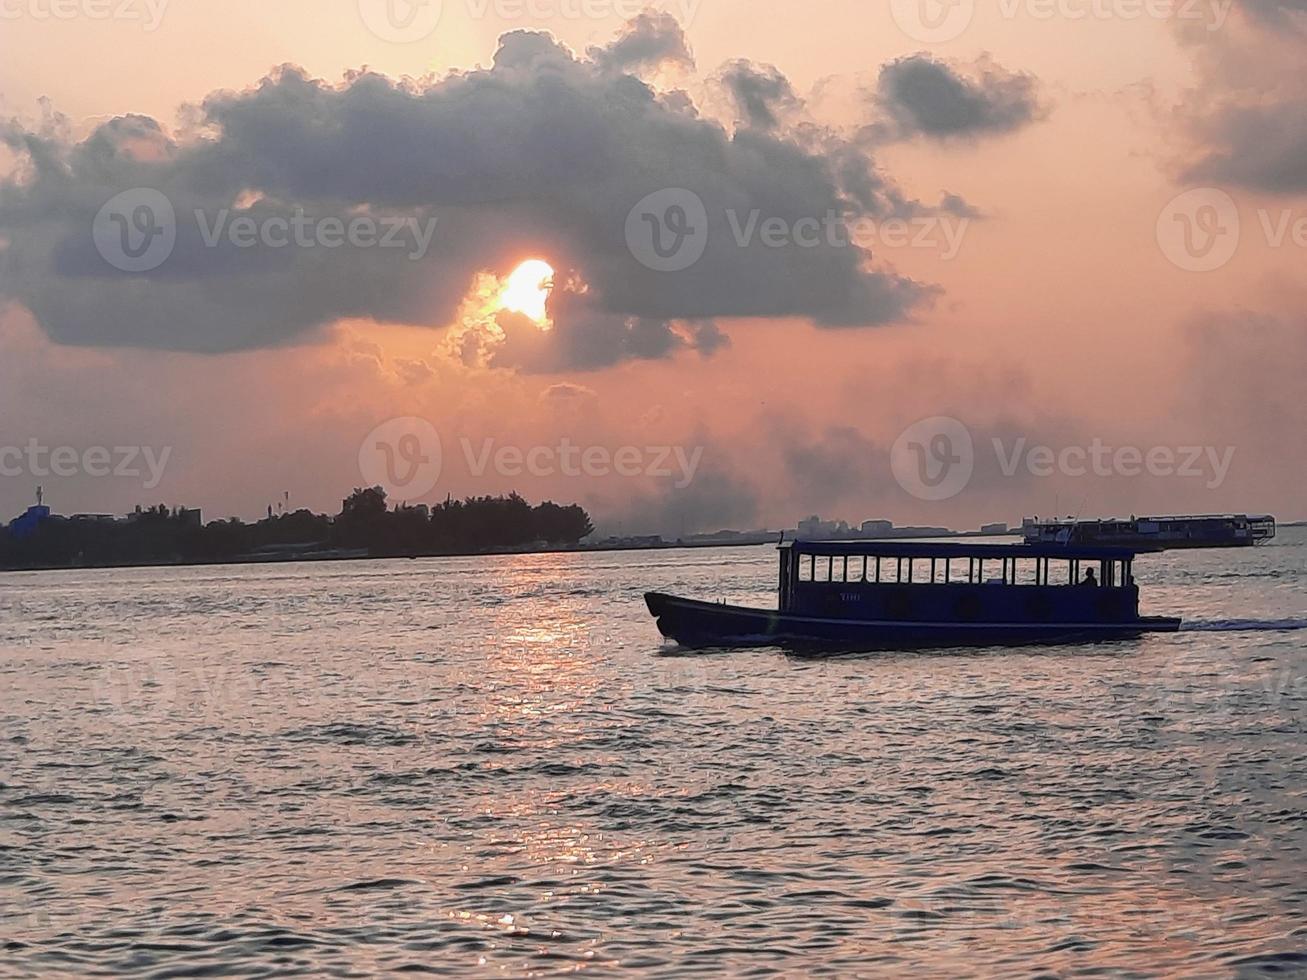 beau coucher de soleil sur la plage de male, maldives photo